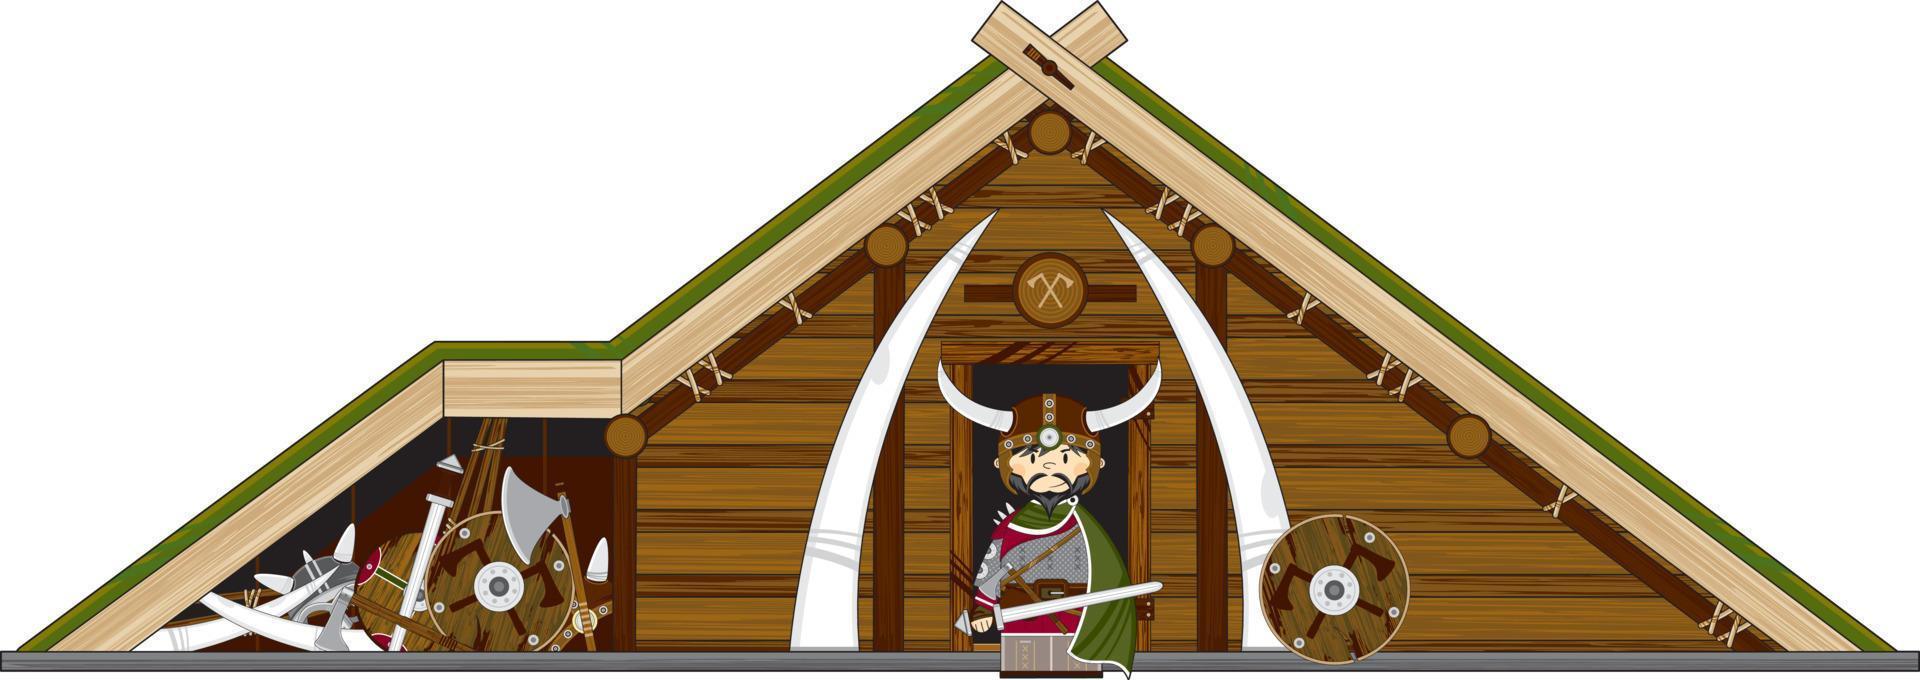 linda dibujos animados vikingo guerrero y granja nórdico historia ilustración vector